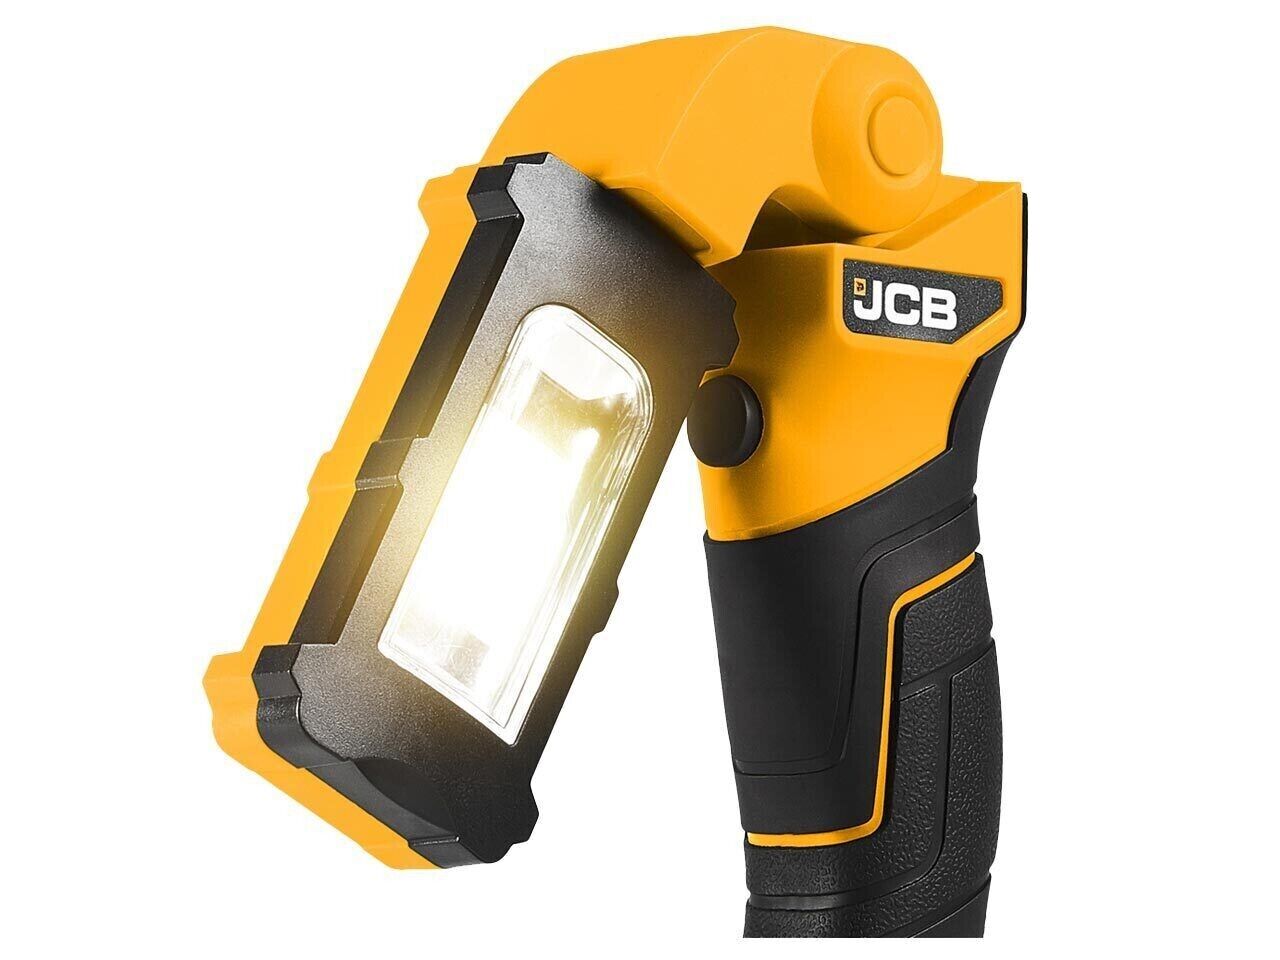 JCB 18V LED Inspection Light Body 21-18IL-B